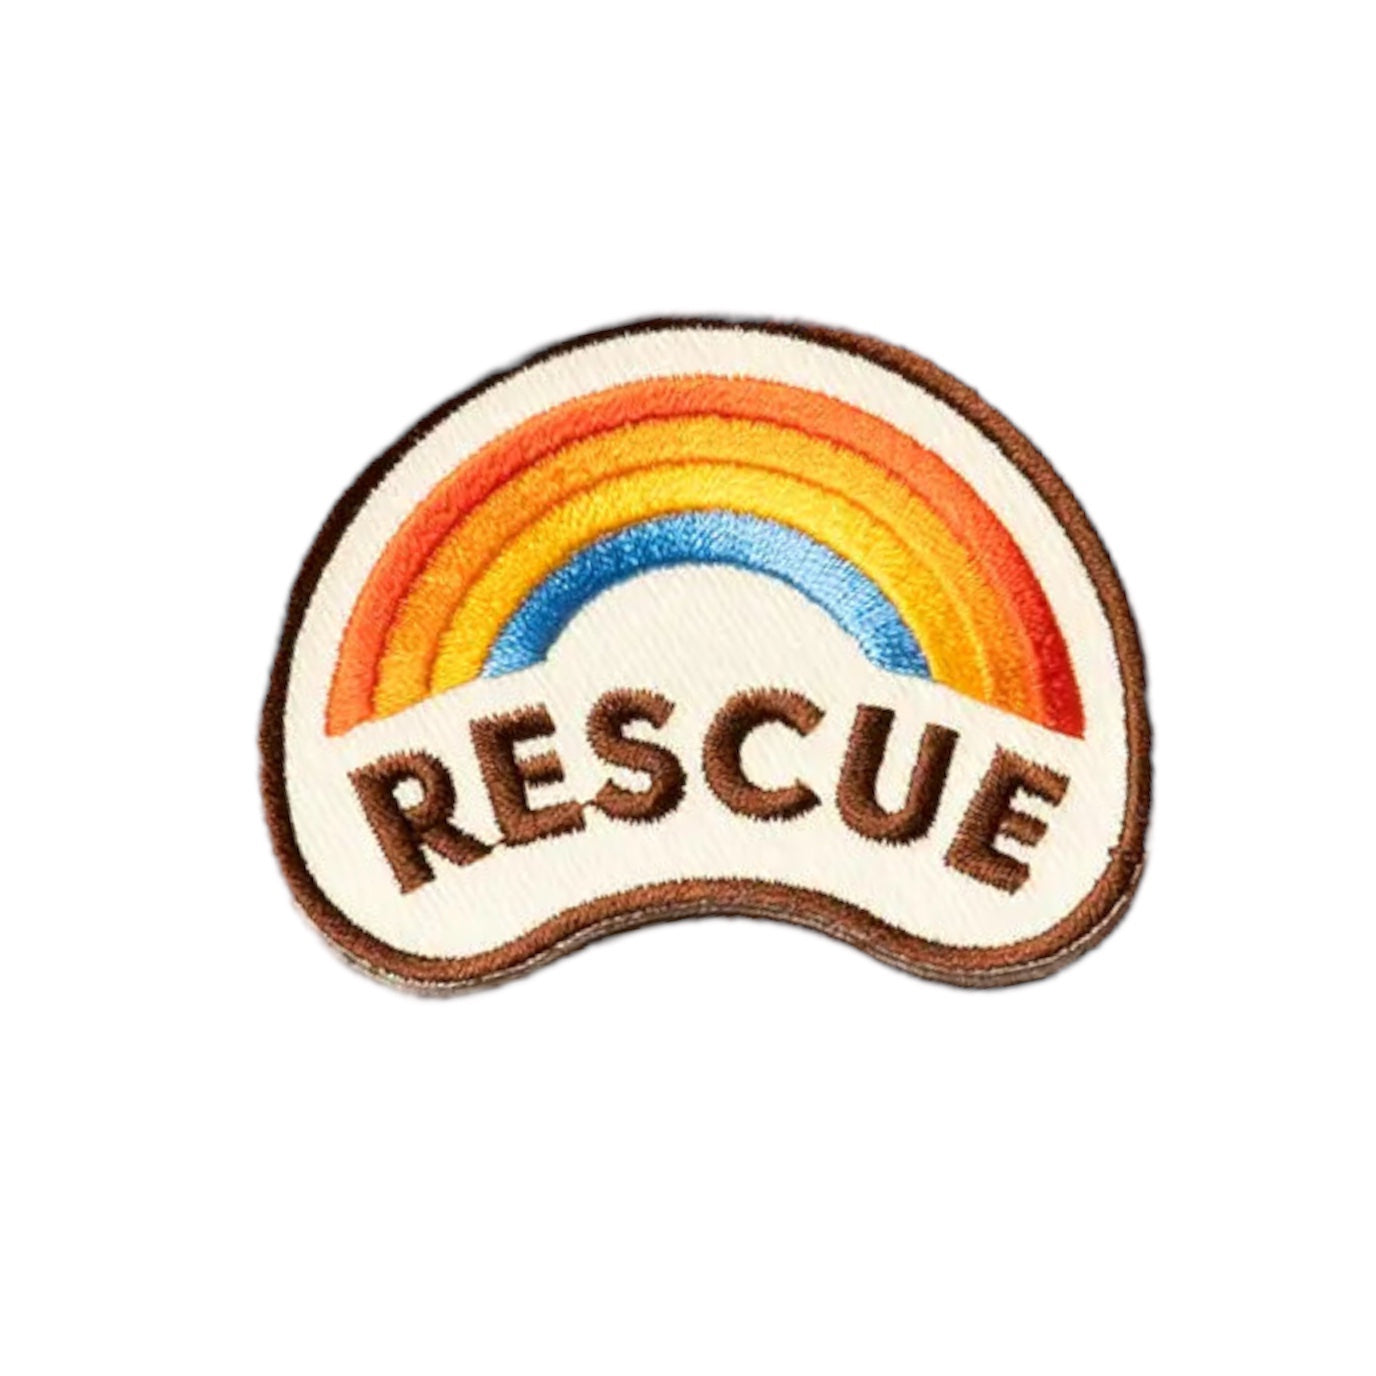 Rescue Badge